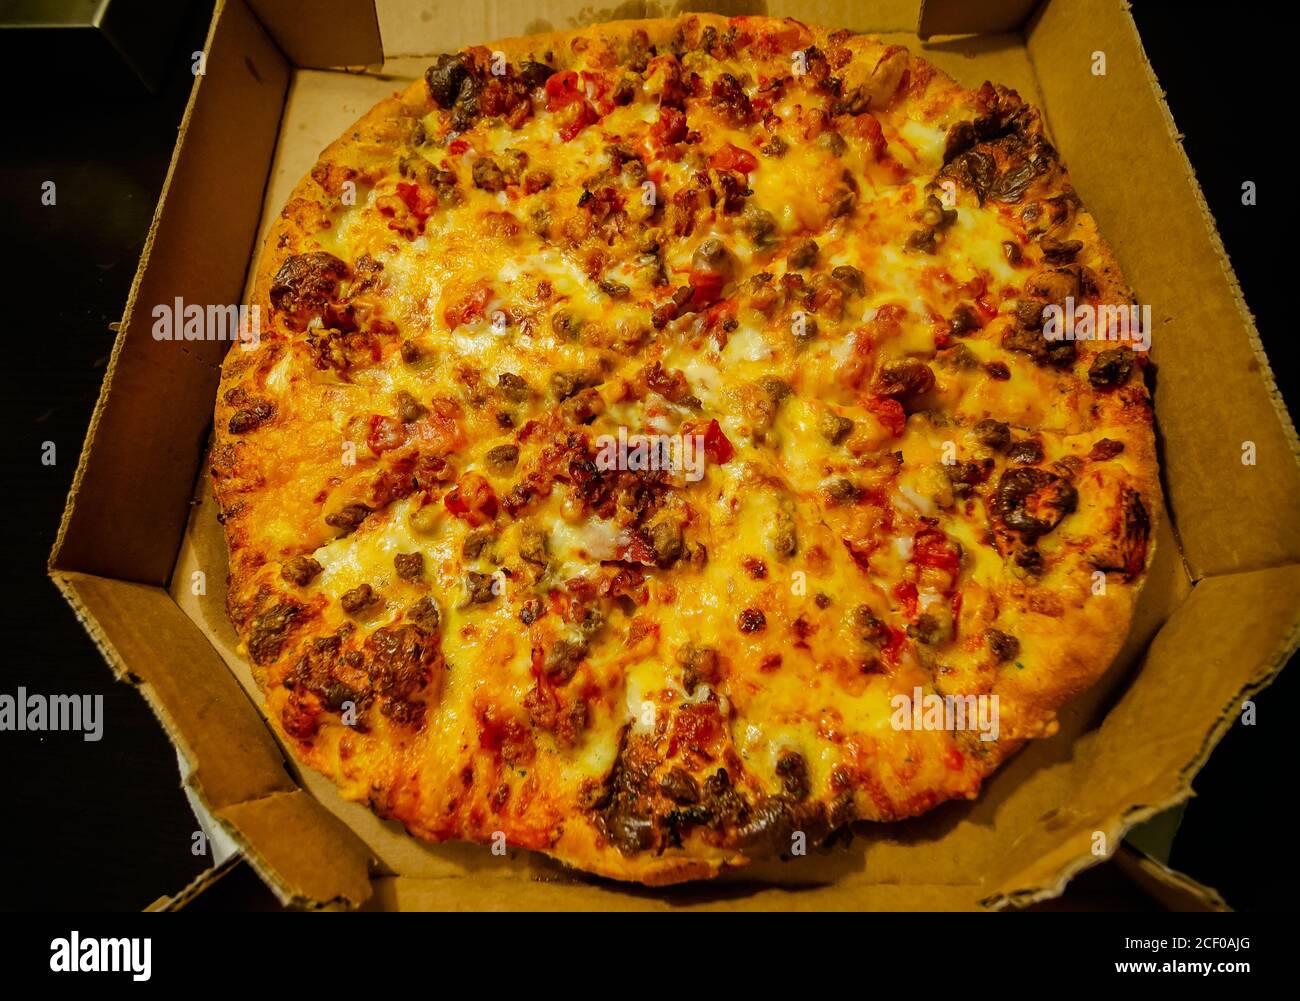 Domino neue Cheeseburger Pizza sitzt in einer Pizza-Box, August 30, 2020,  in Hammond, Louisiana. Die Spezialität Pizza bietet Ketchup-Senf-Sauce  Stockfotografie - Alamy